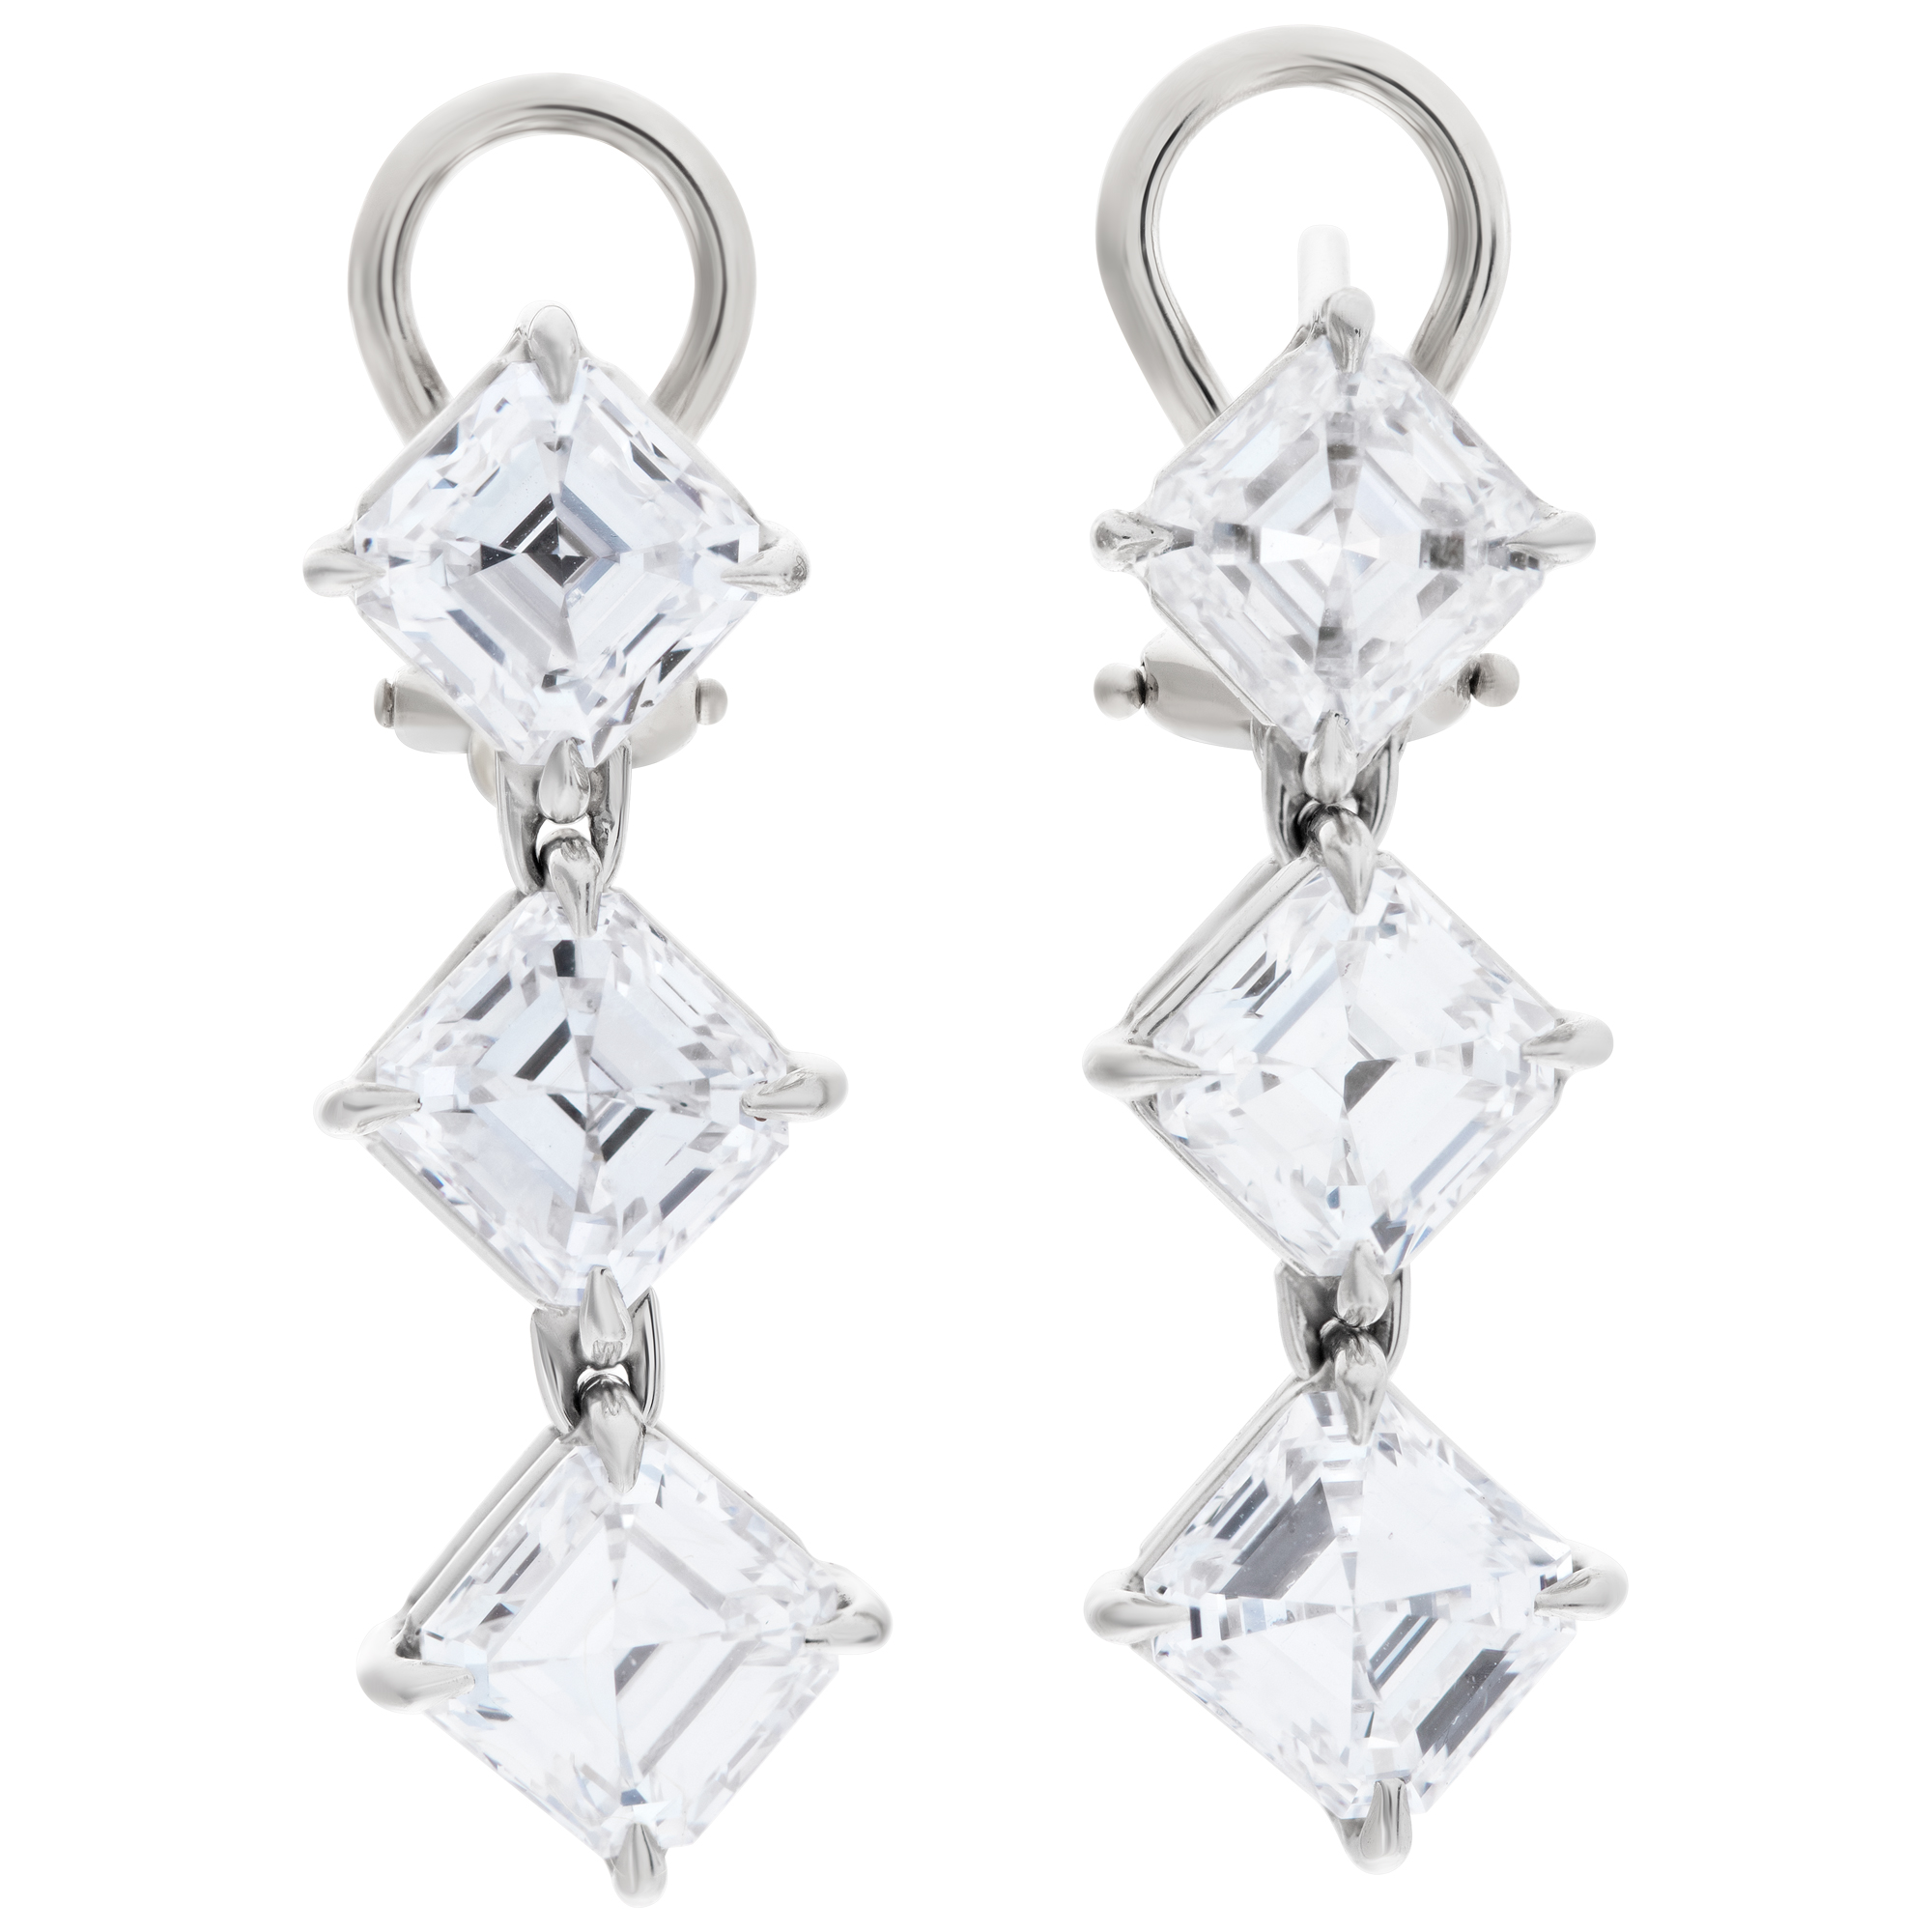 All GIA certified, 6 Asscher cut diamonds totaling 6.02 carats, set as dangling stud earrings, 14 K image 1